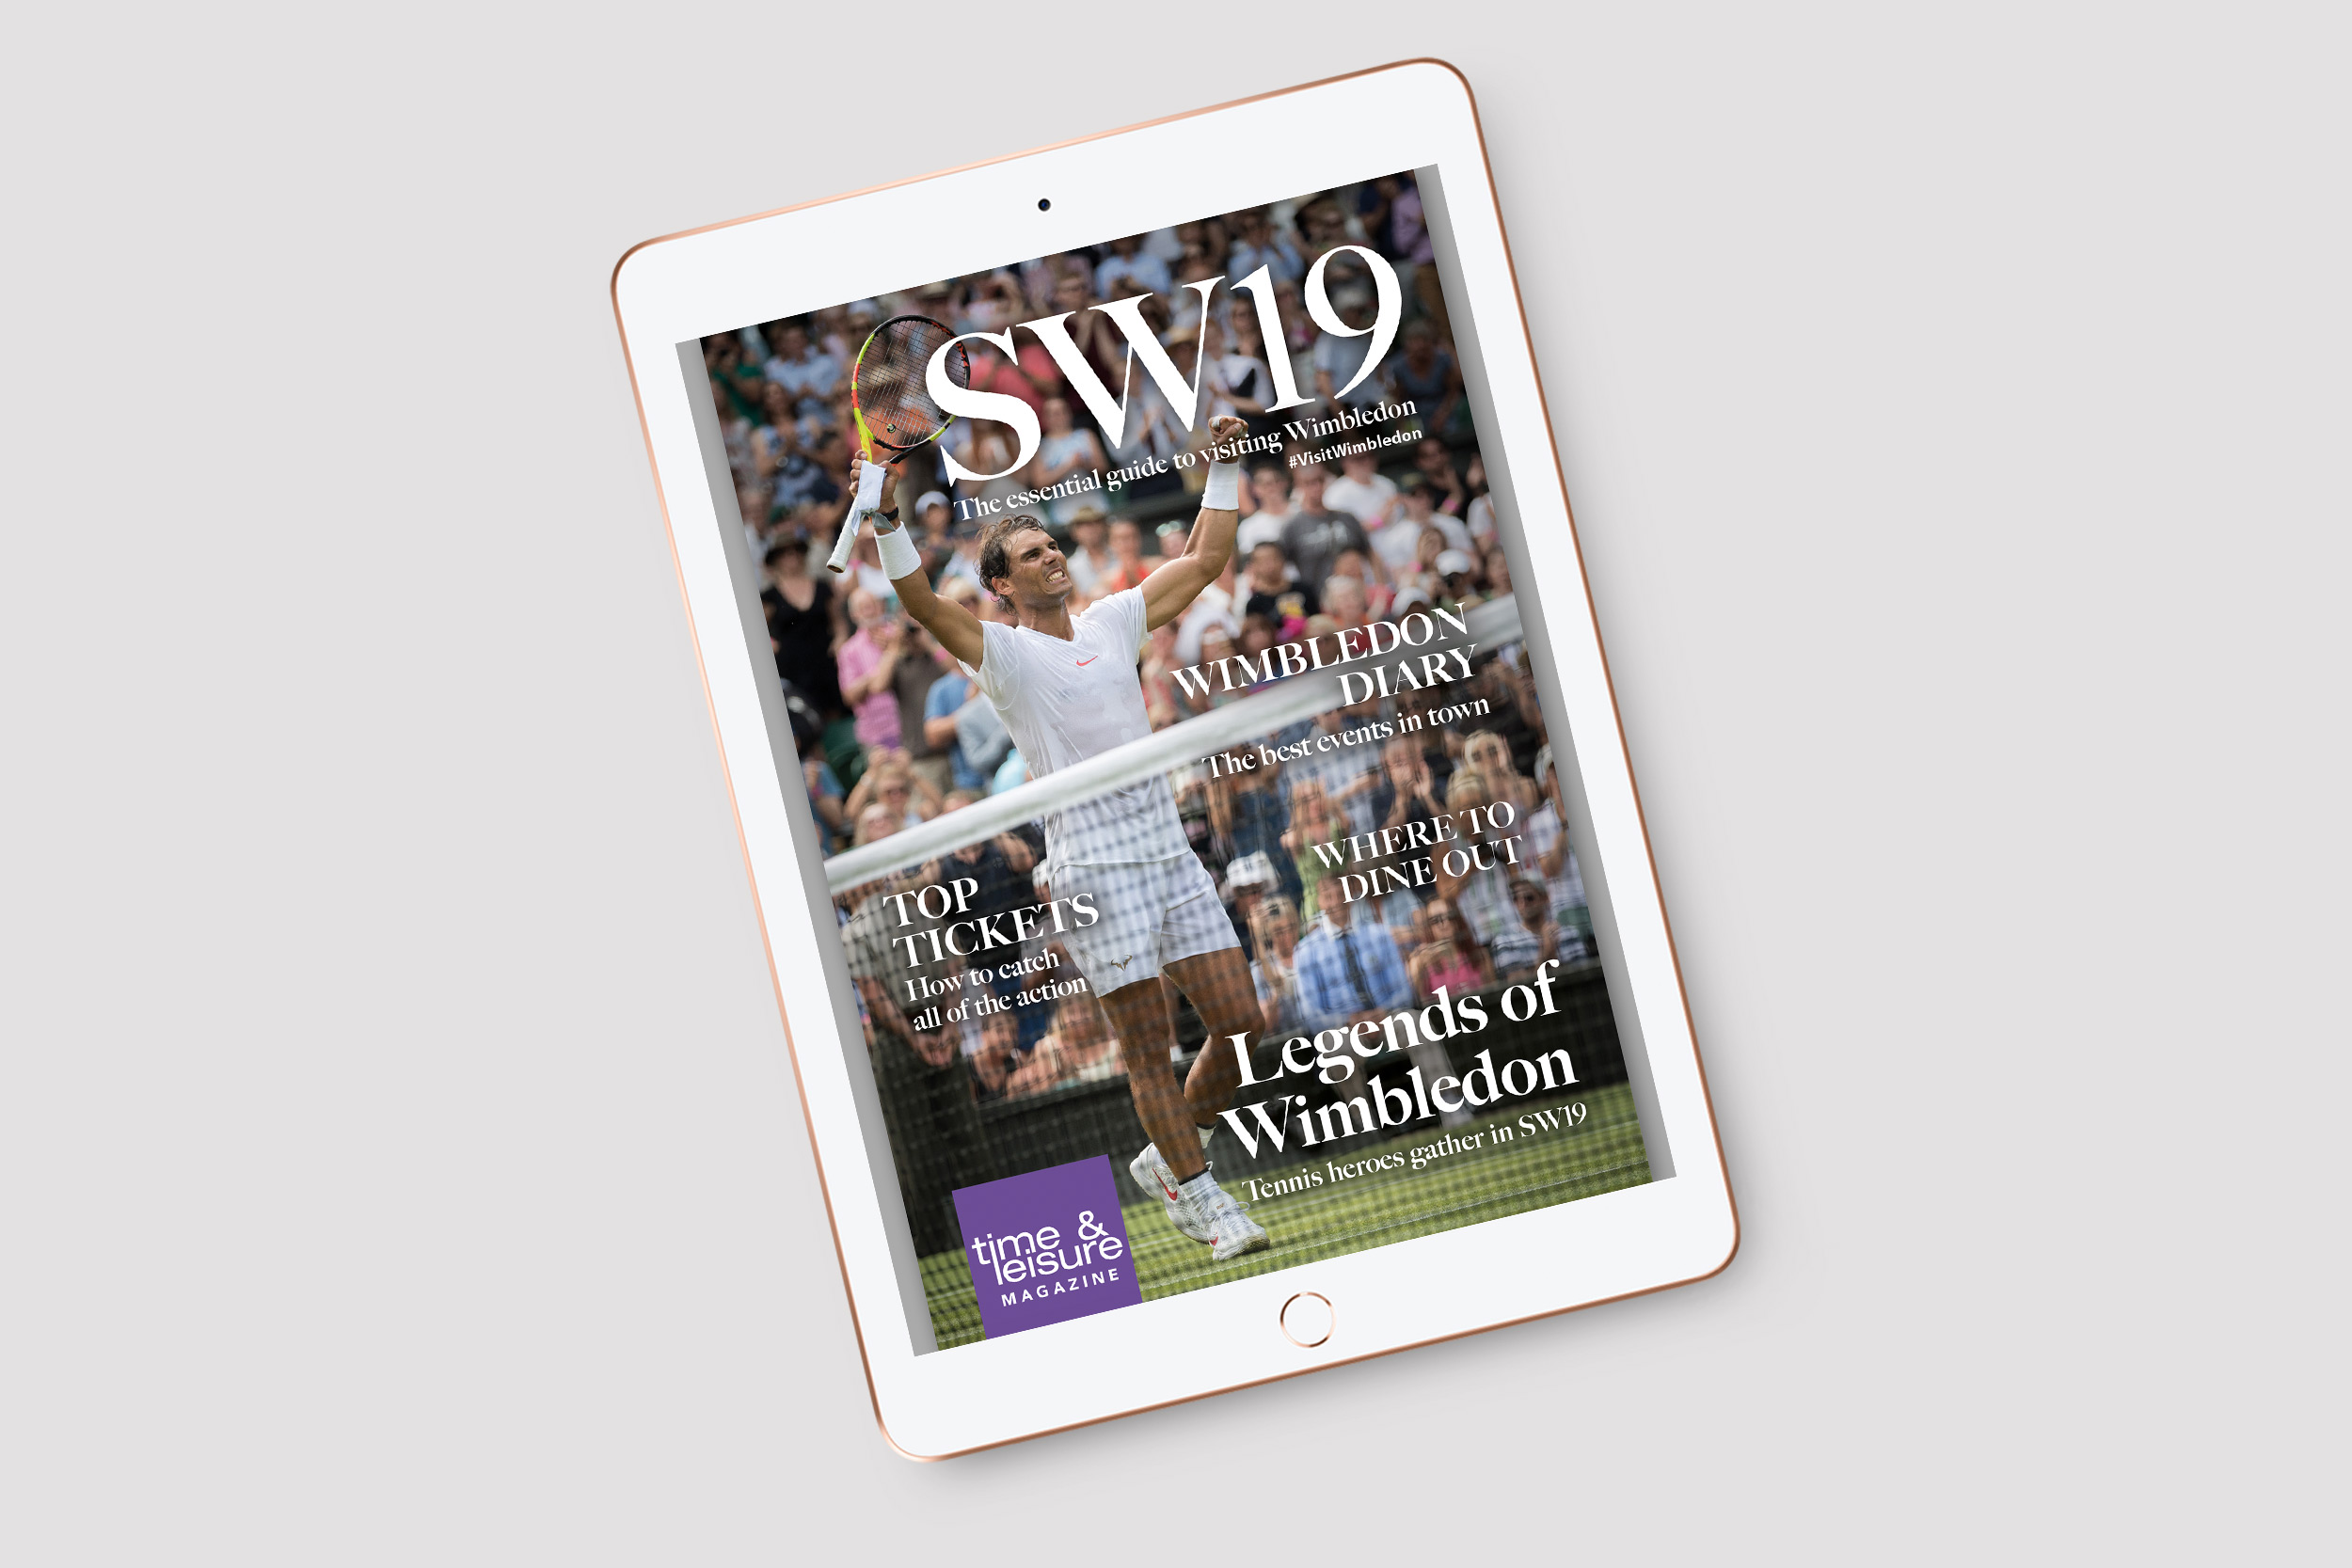 SW19 magazine design publishing